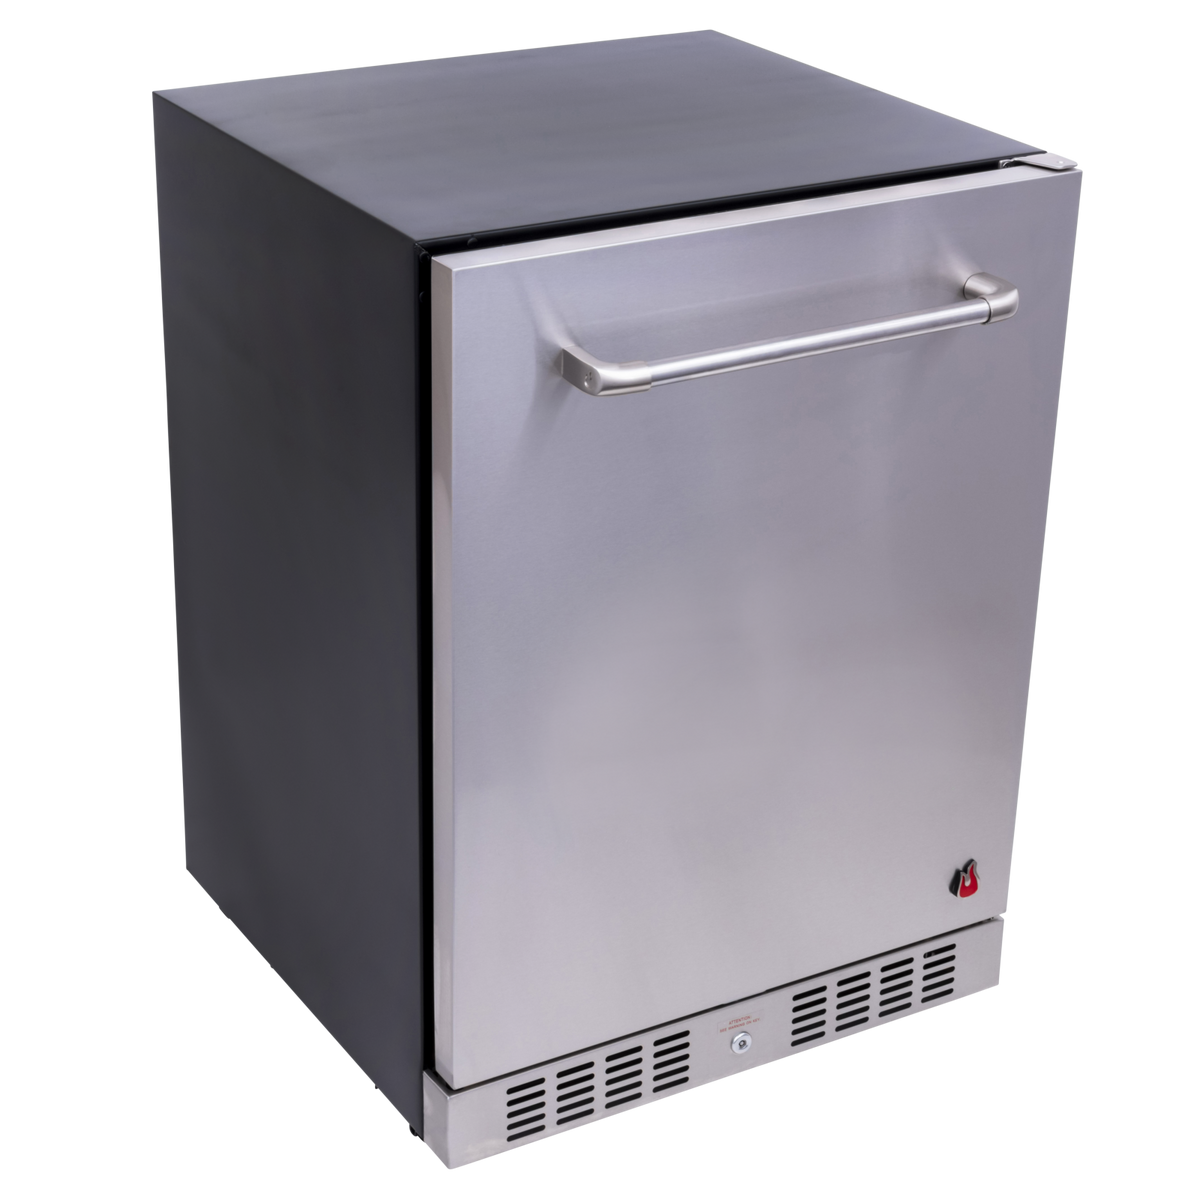 Medallion Series™ Built-In Refrigerator